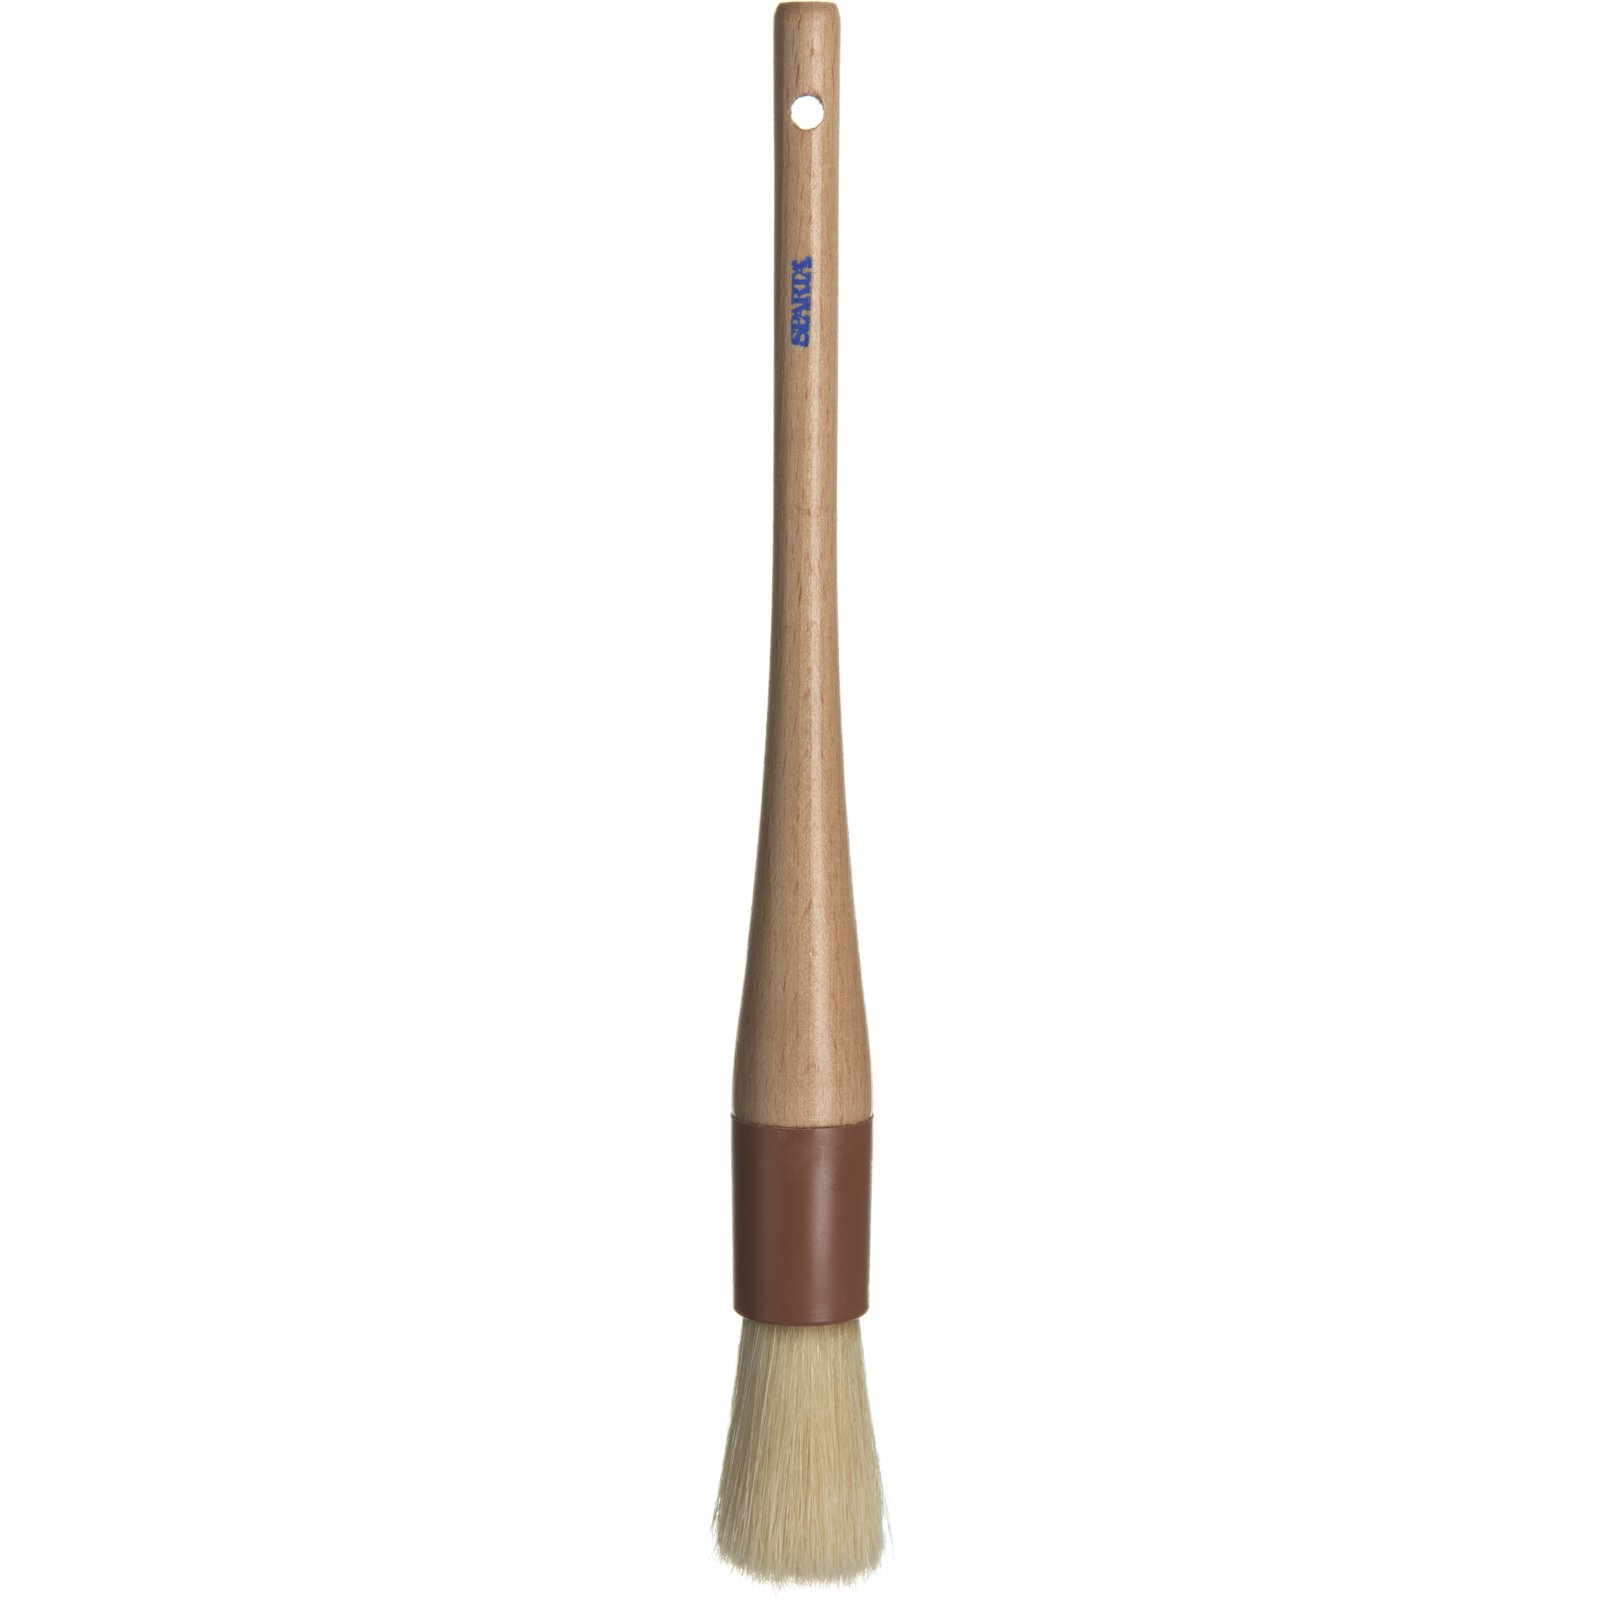 Ateco 1628 Boar Bristle Bench Brush - 9 1/2L x 1 3/4W